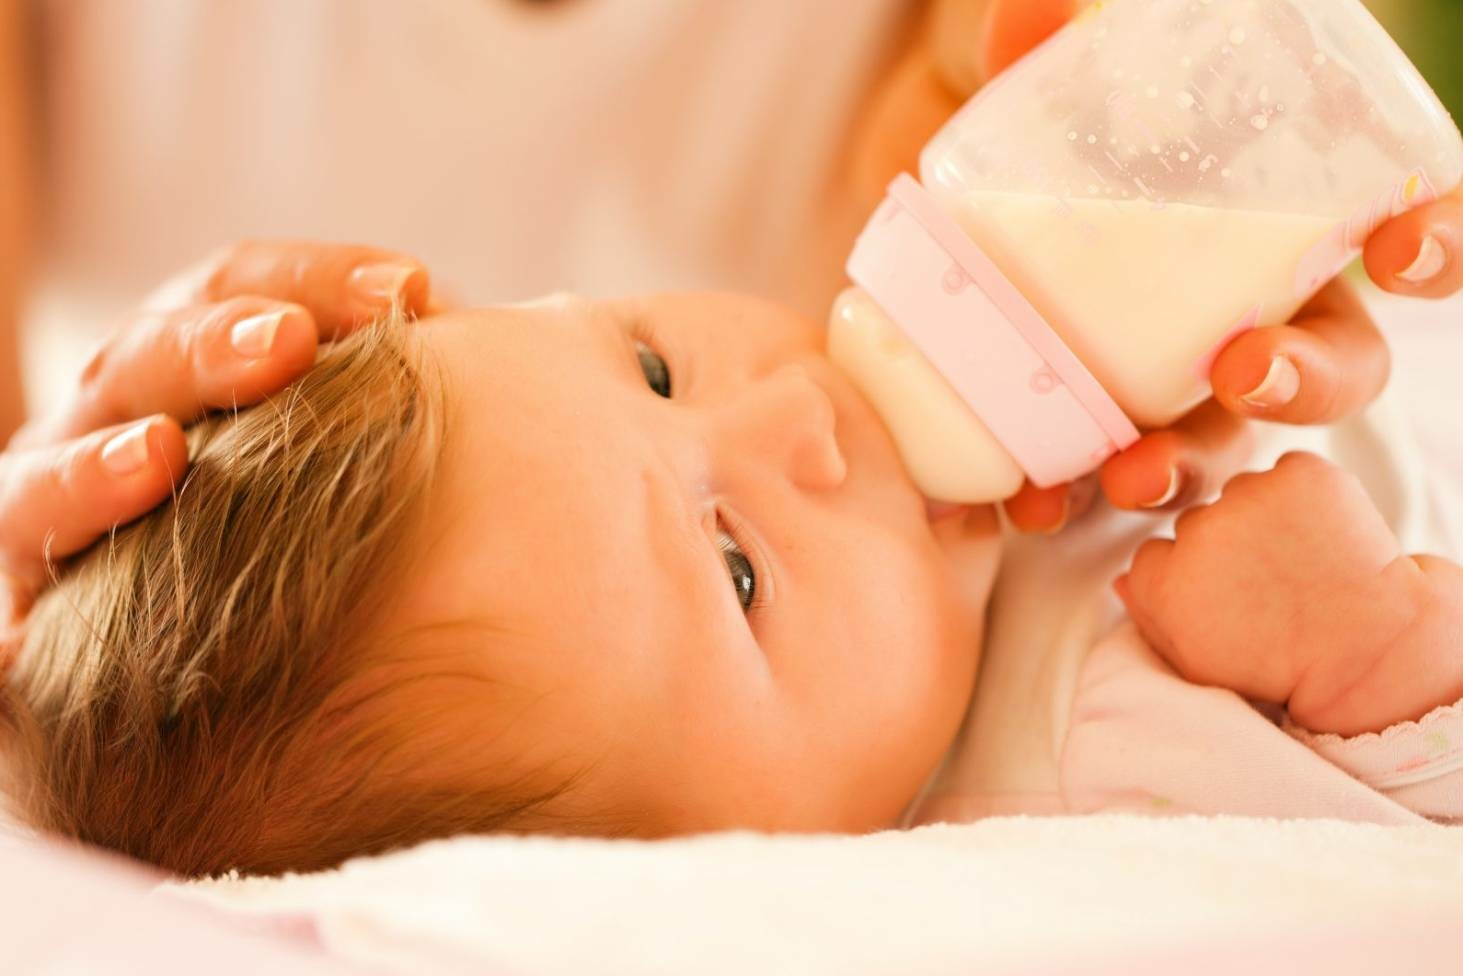 Nhu cầu bú sữa của trẻ sơ sinh. Nguồn: stuff.co.nz